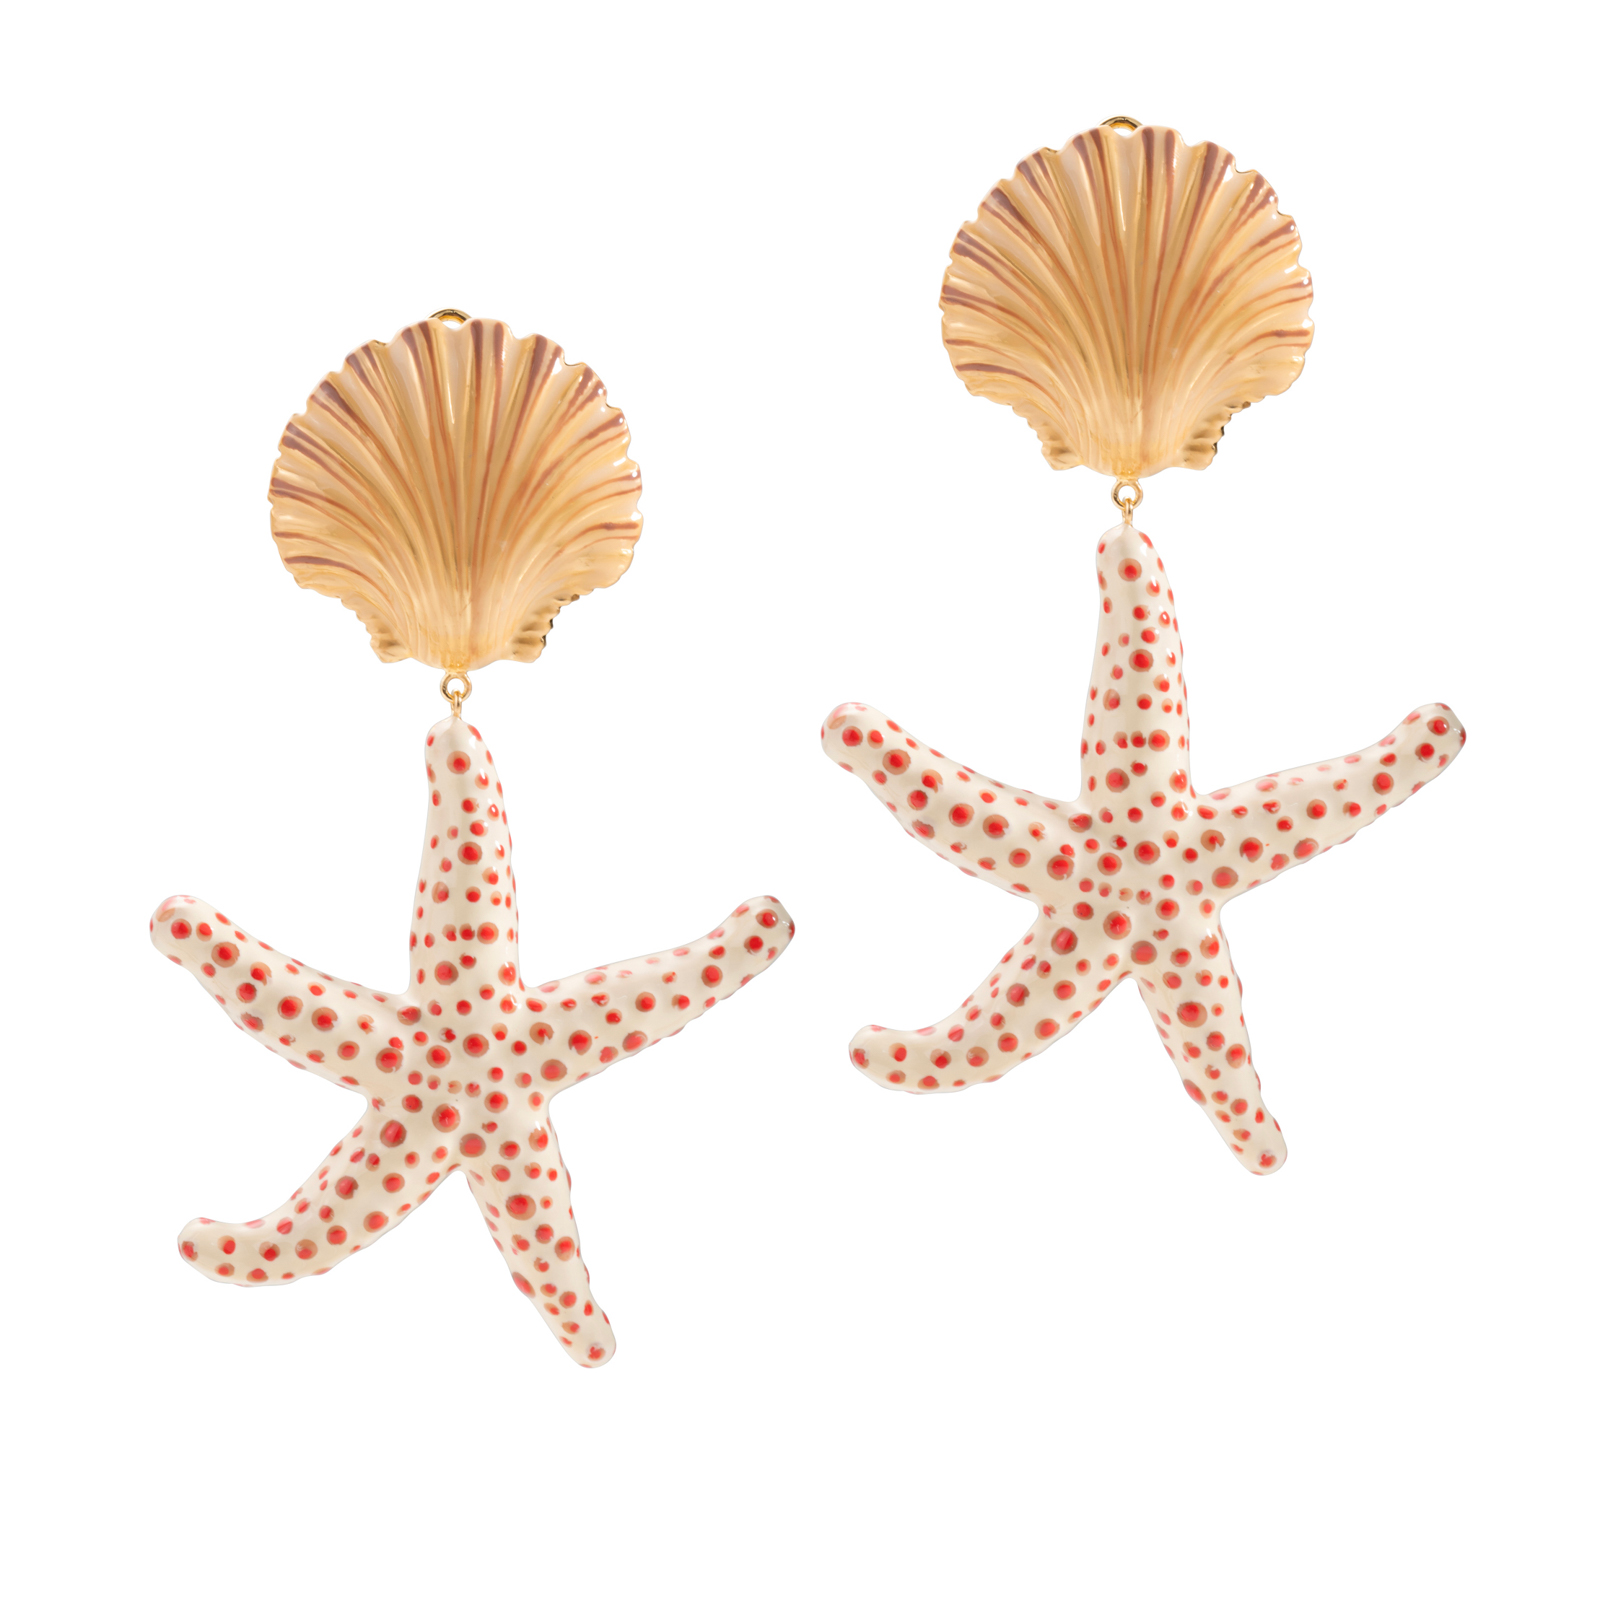 Orecchini con conchiglia e stella marina color sabbia sfumata, bianco e corallo